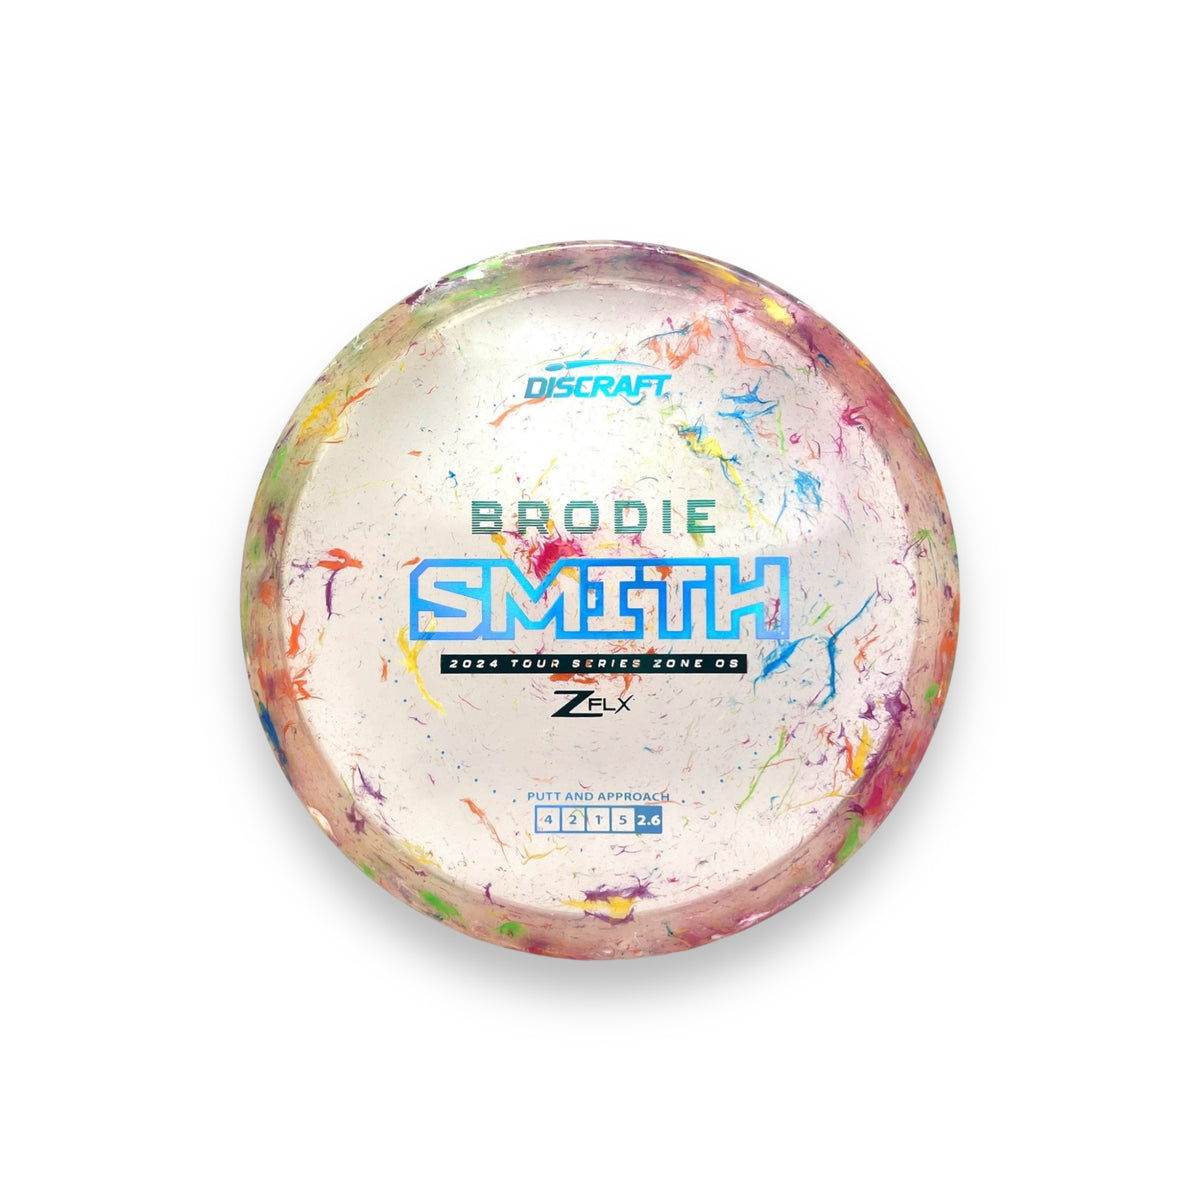 2024 Jawbreaker ZFlx Zone OS-Brodie Smith Tour Series